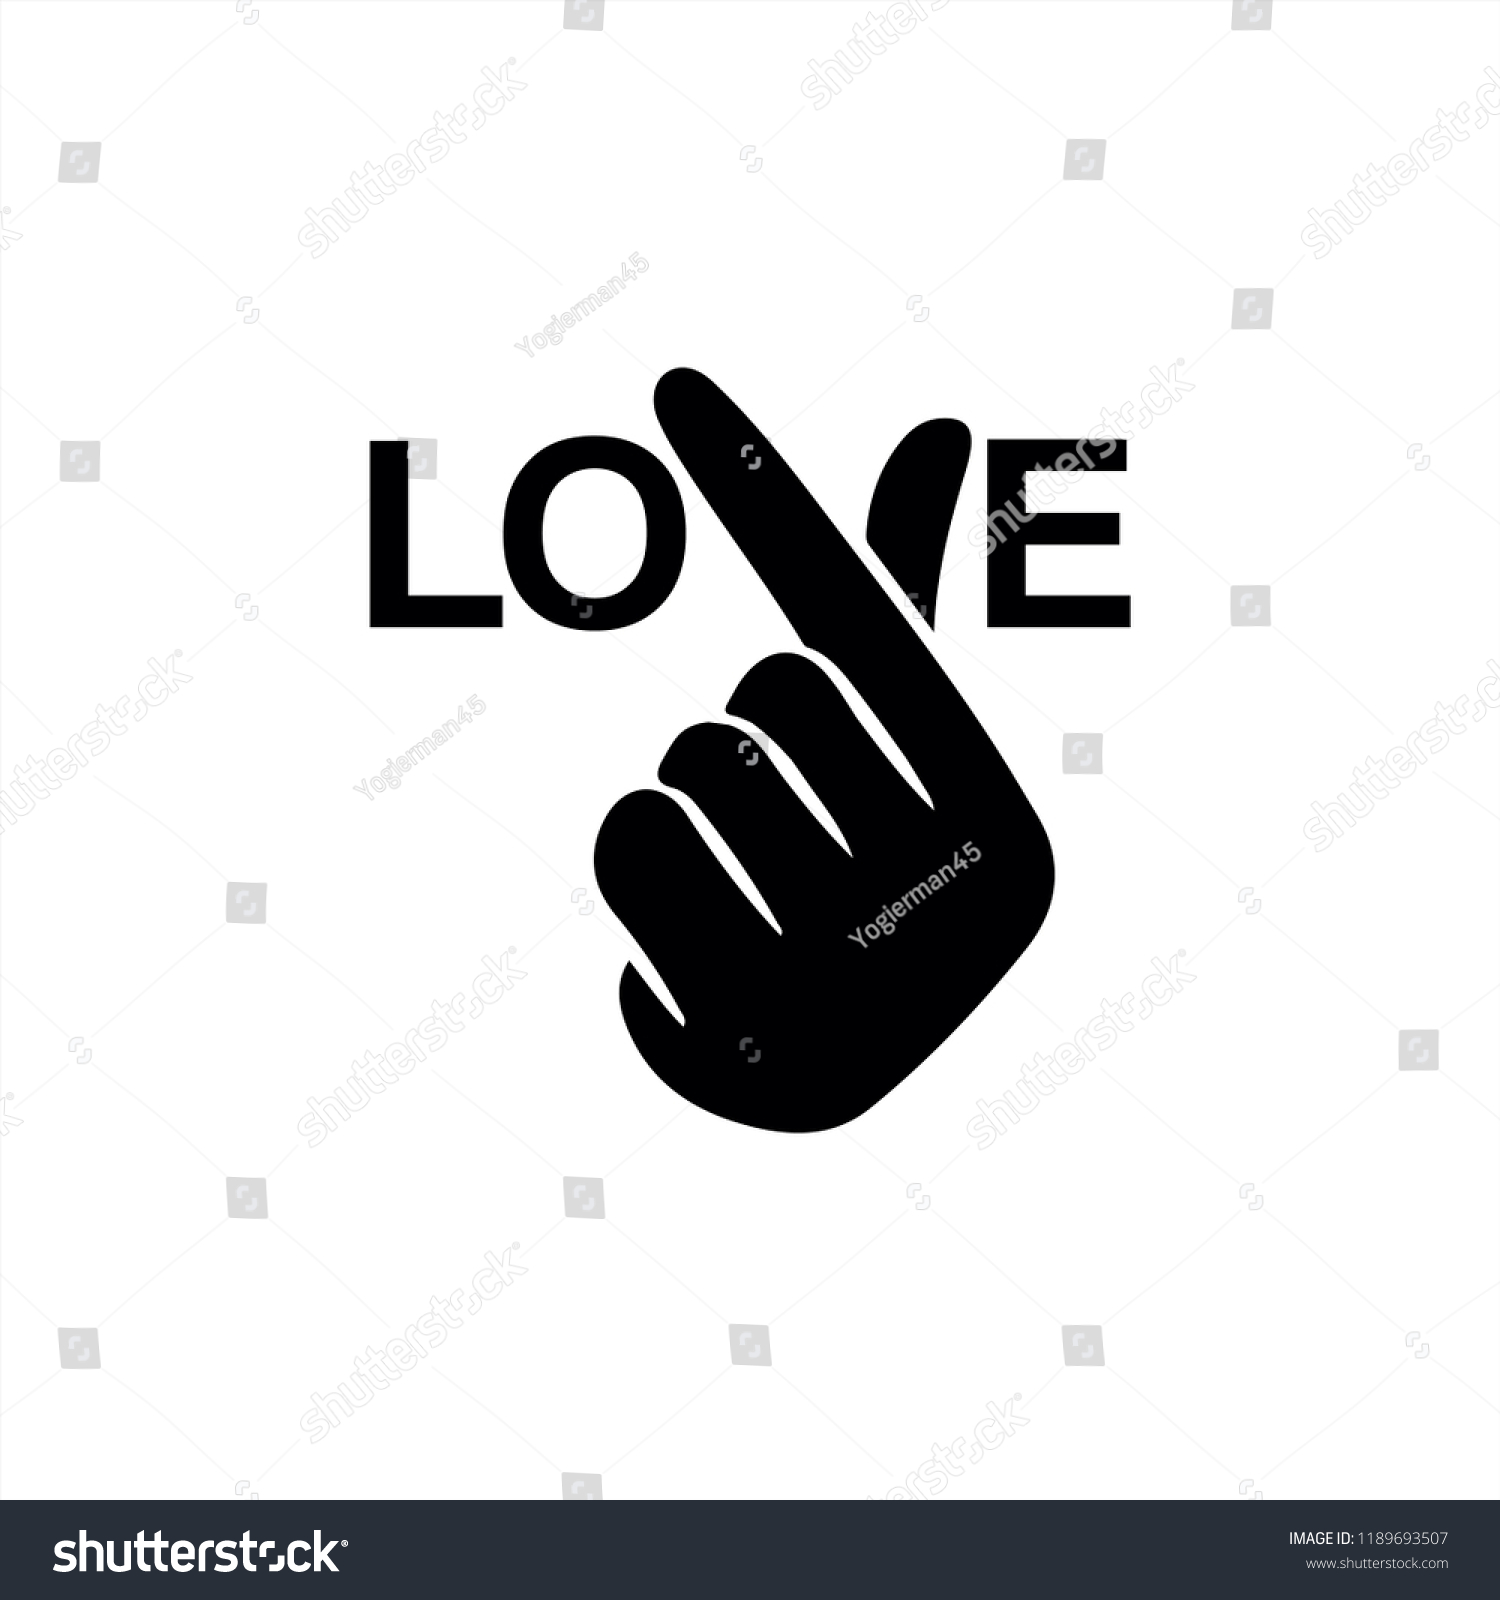 韓国の指 の心 愛してる のハングルベクターイラスト 韓国の象徴である手の心 愛の手のジェスチャーのメッセージ ウェブ用にスタイル化された署名アイコンと印刷 手は ハートの記号に折りたたまれた のベクター画像素材 ロイヤリティフリー